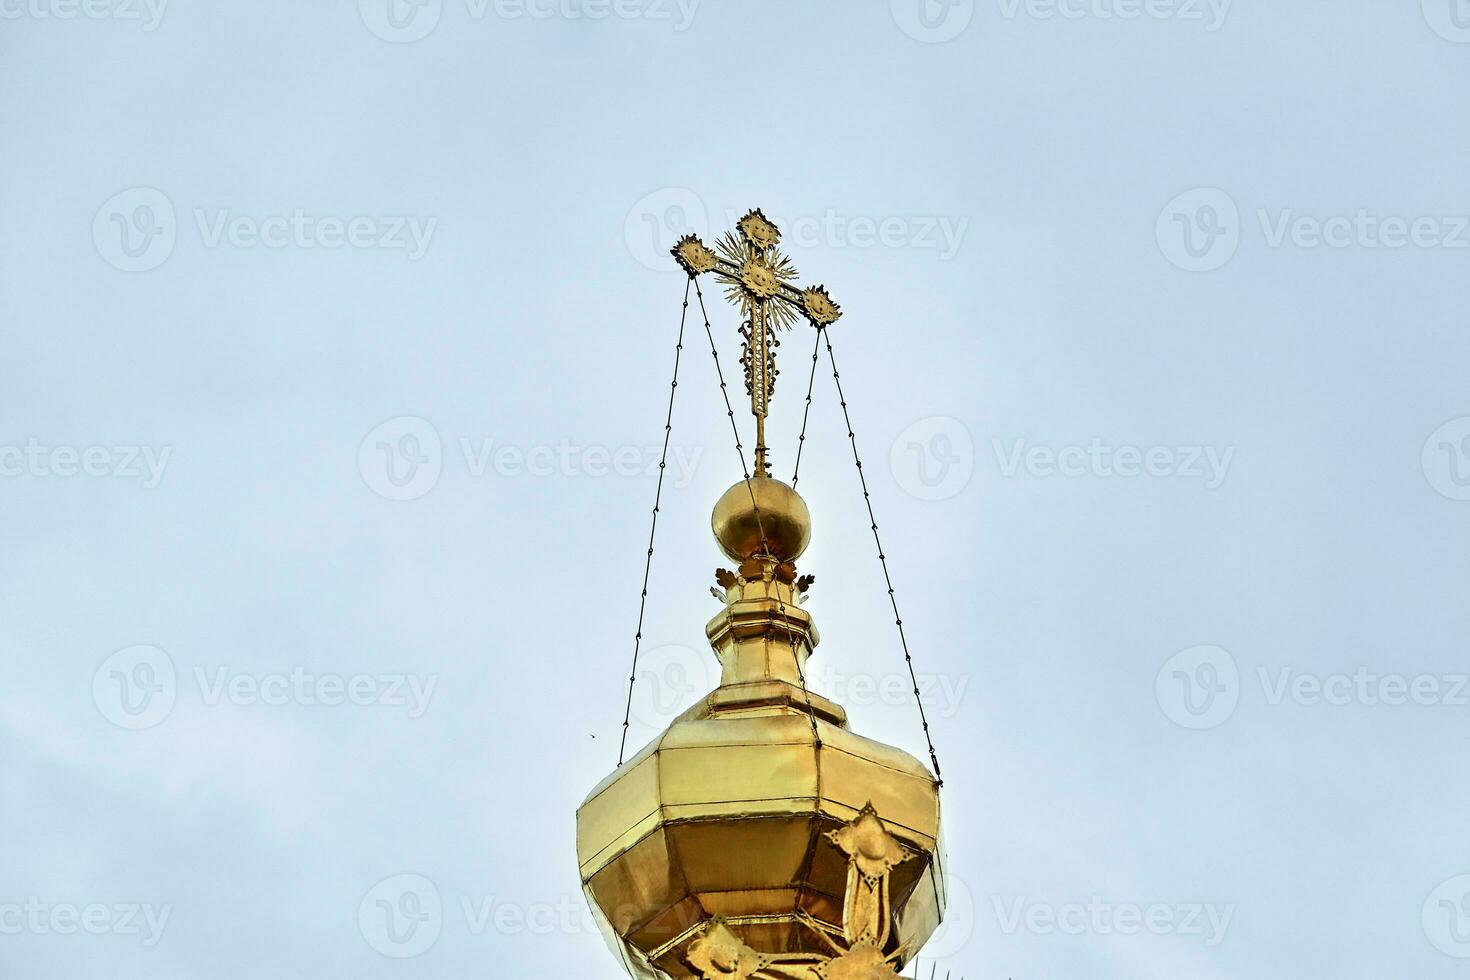 oriental ortodoxo cruces en oro cúpulas, cúpulas, en contra azul cielo con nubes foto